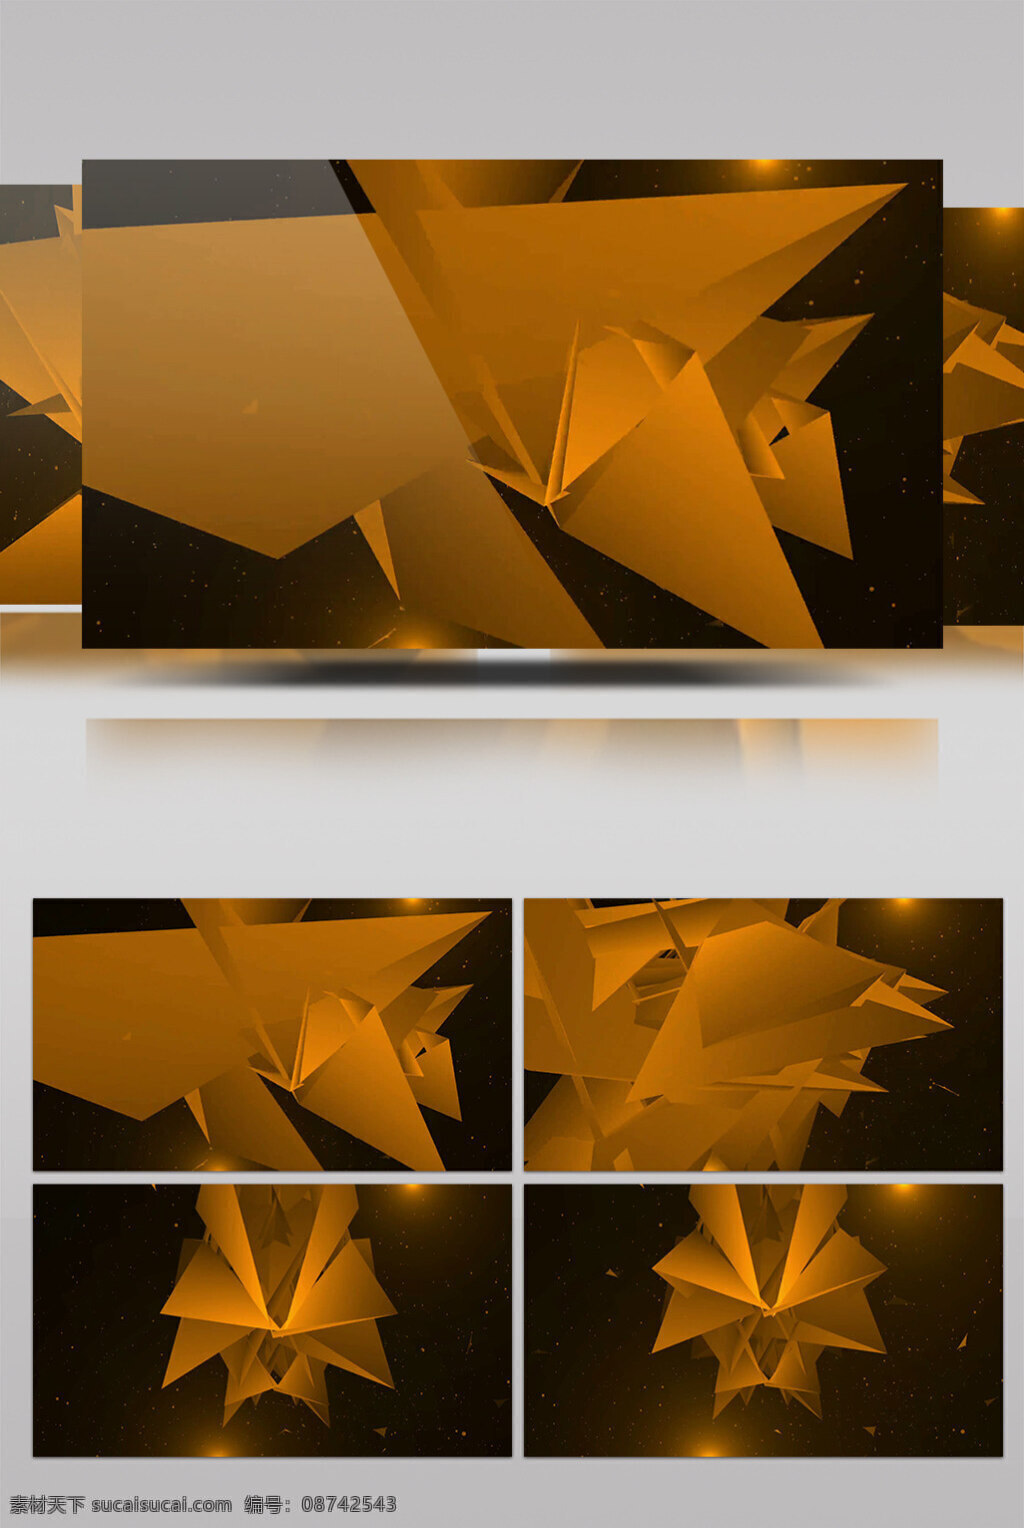 黄色 折纸 动态 视频 黄色折纸 艺术产品 景色美景 动态背景 高质量 背景 好看背景素材